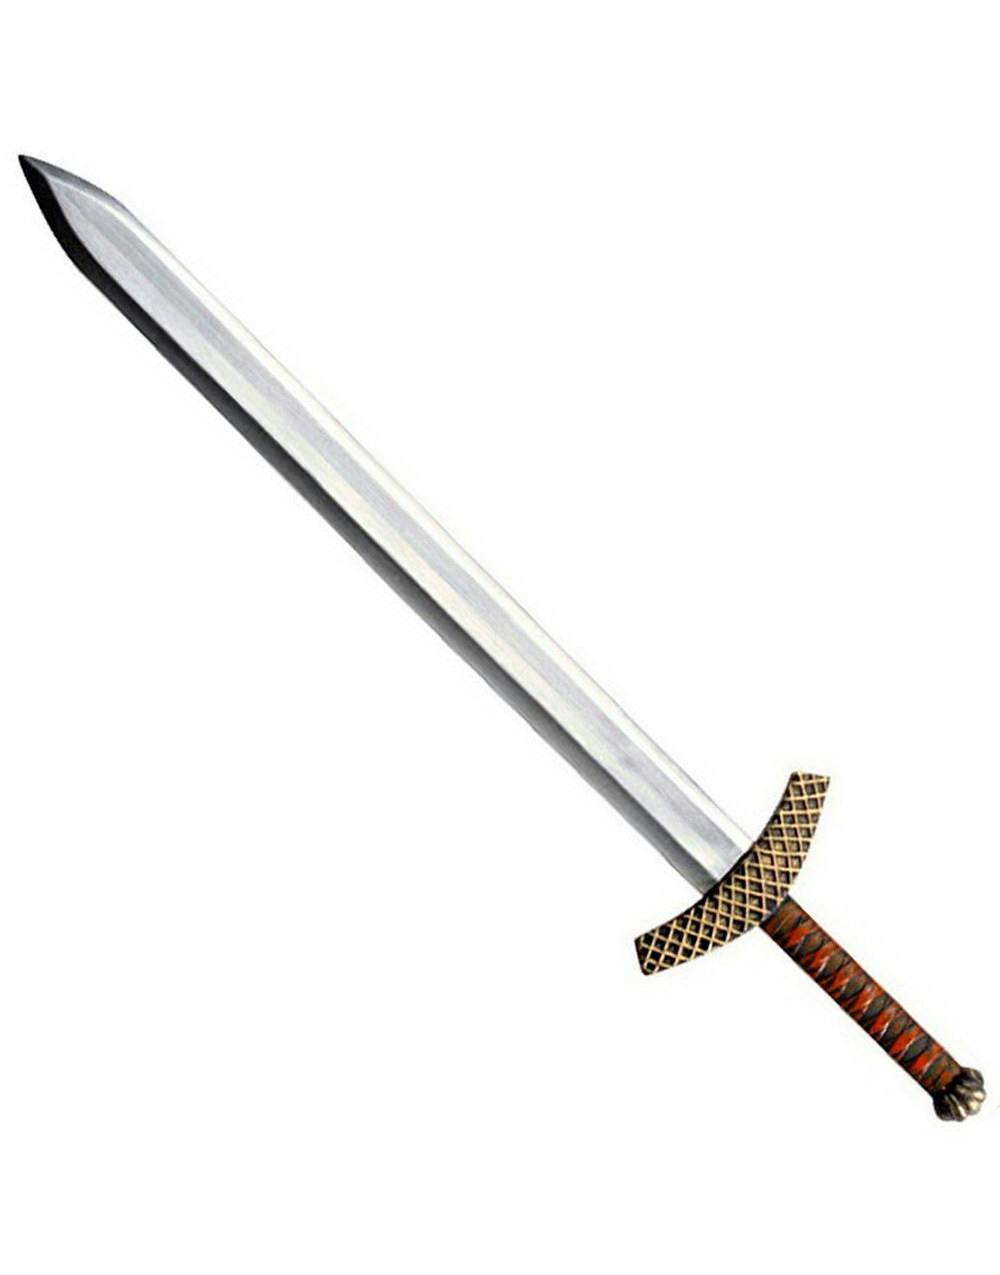 890012_4-kriger-sverd-warrior-sword.jpg?